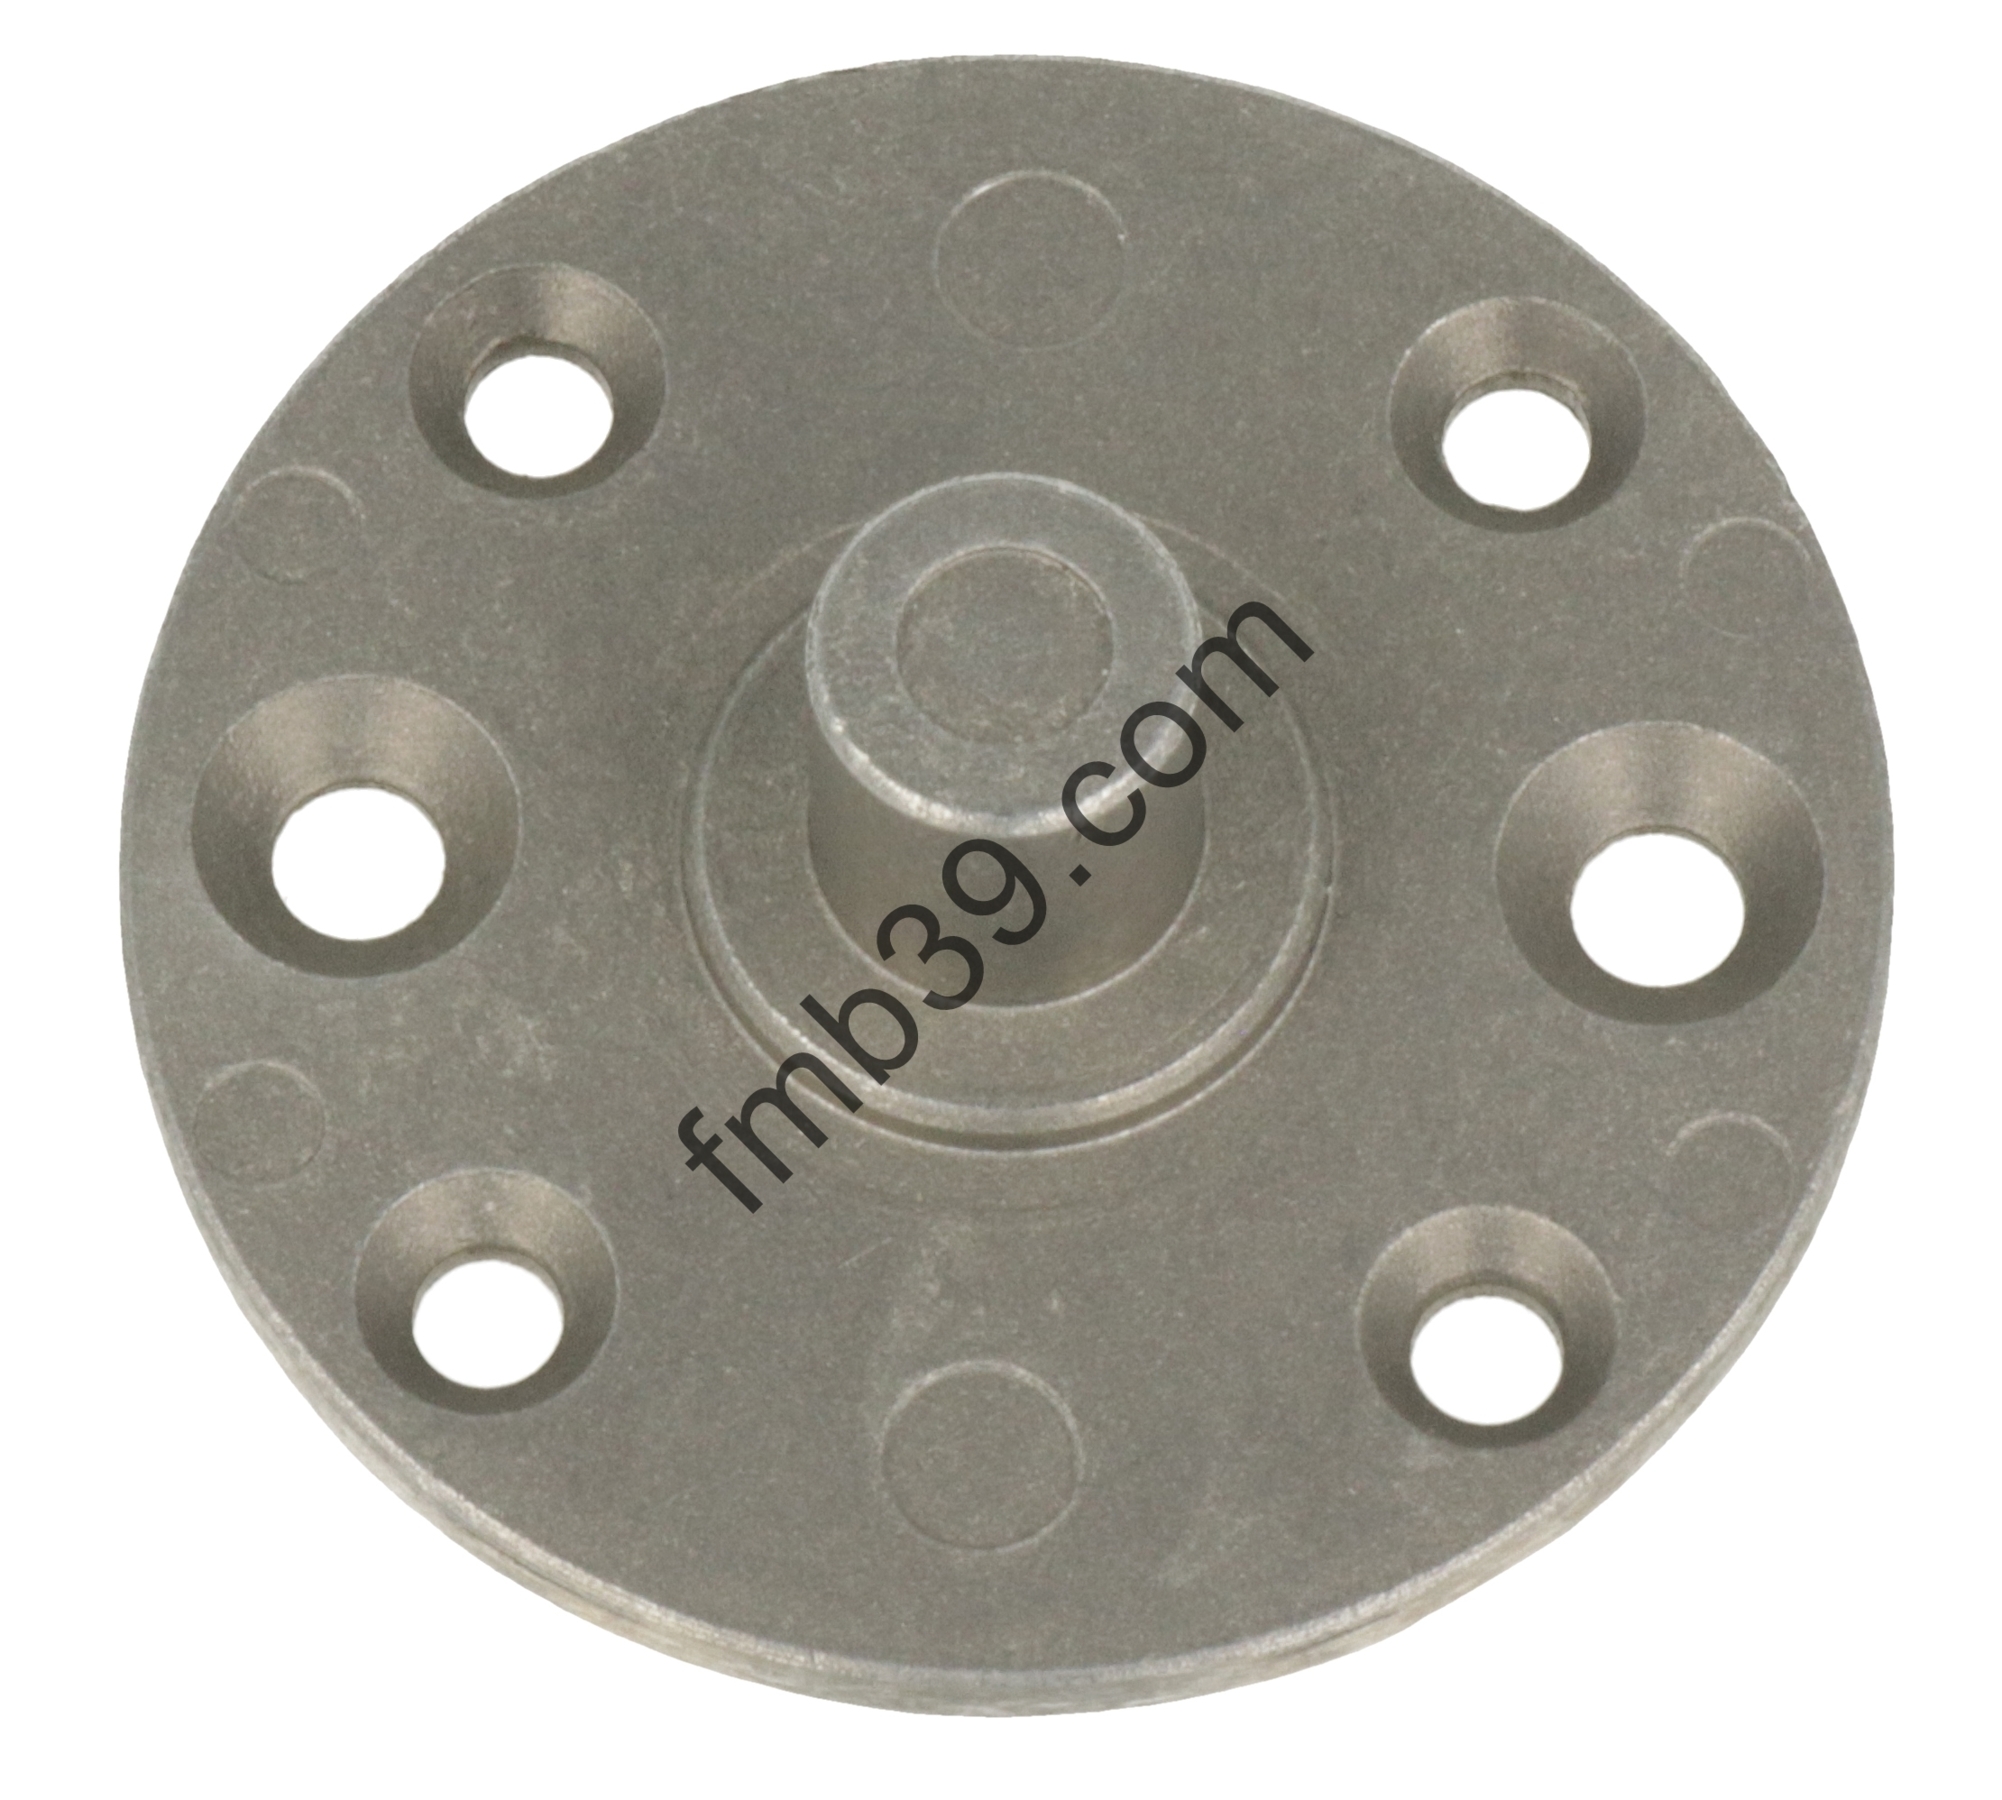 Pour moteurs SIMU Plaque support ronde en acier SIMU Ø54 mm avec téton de 12 mm